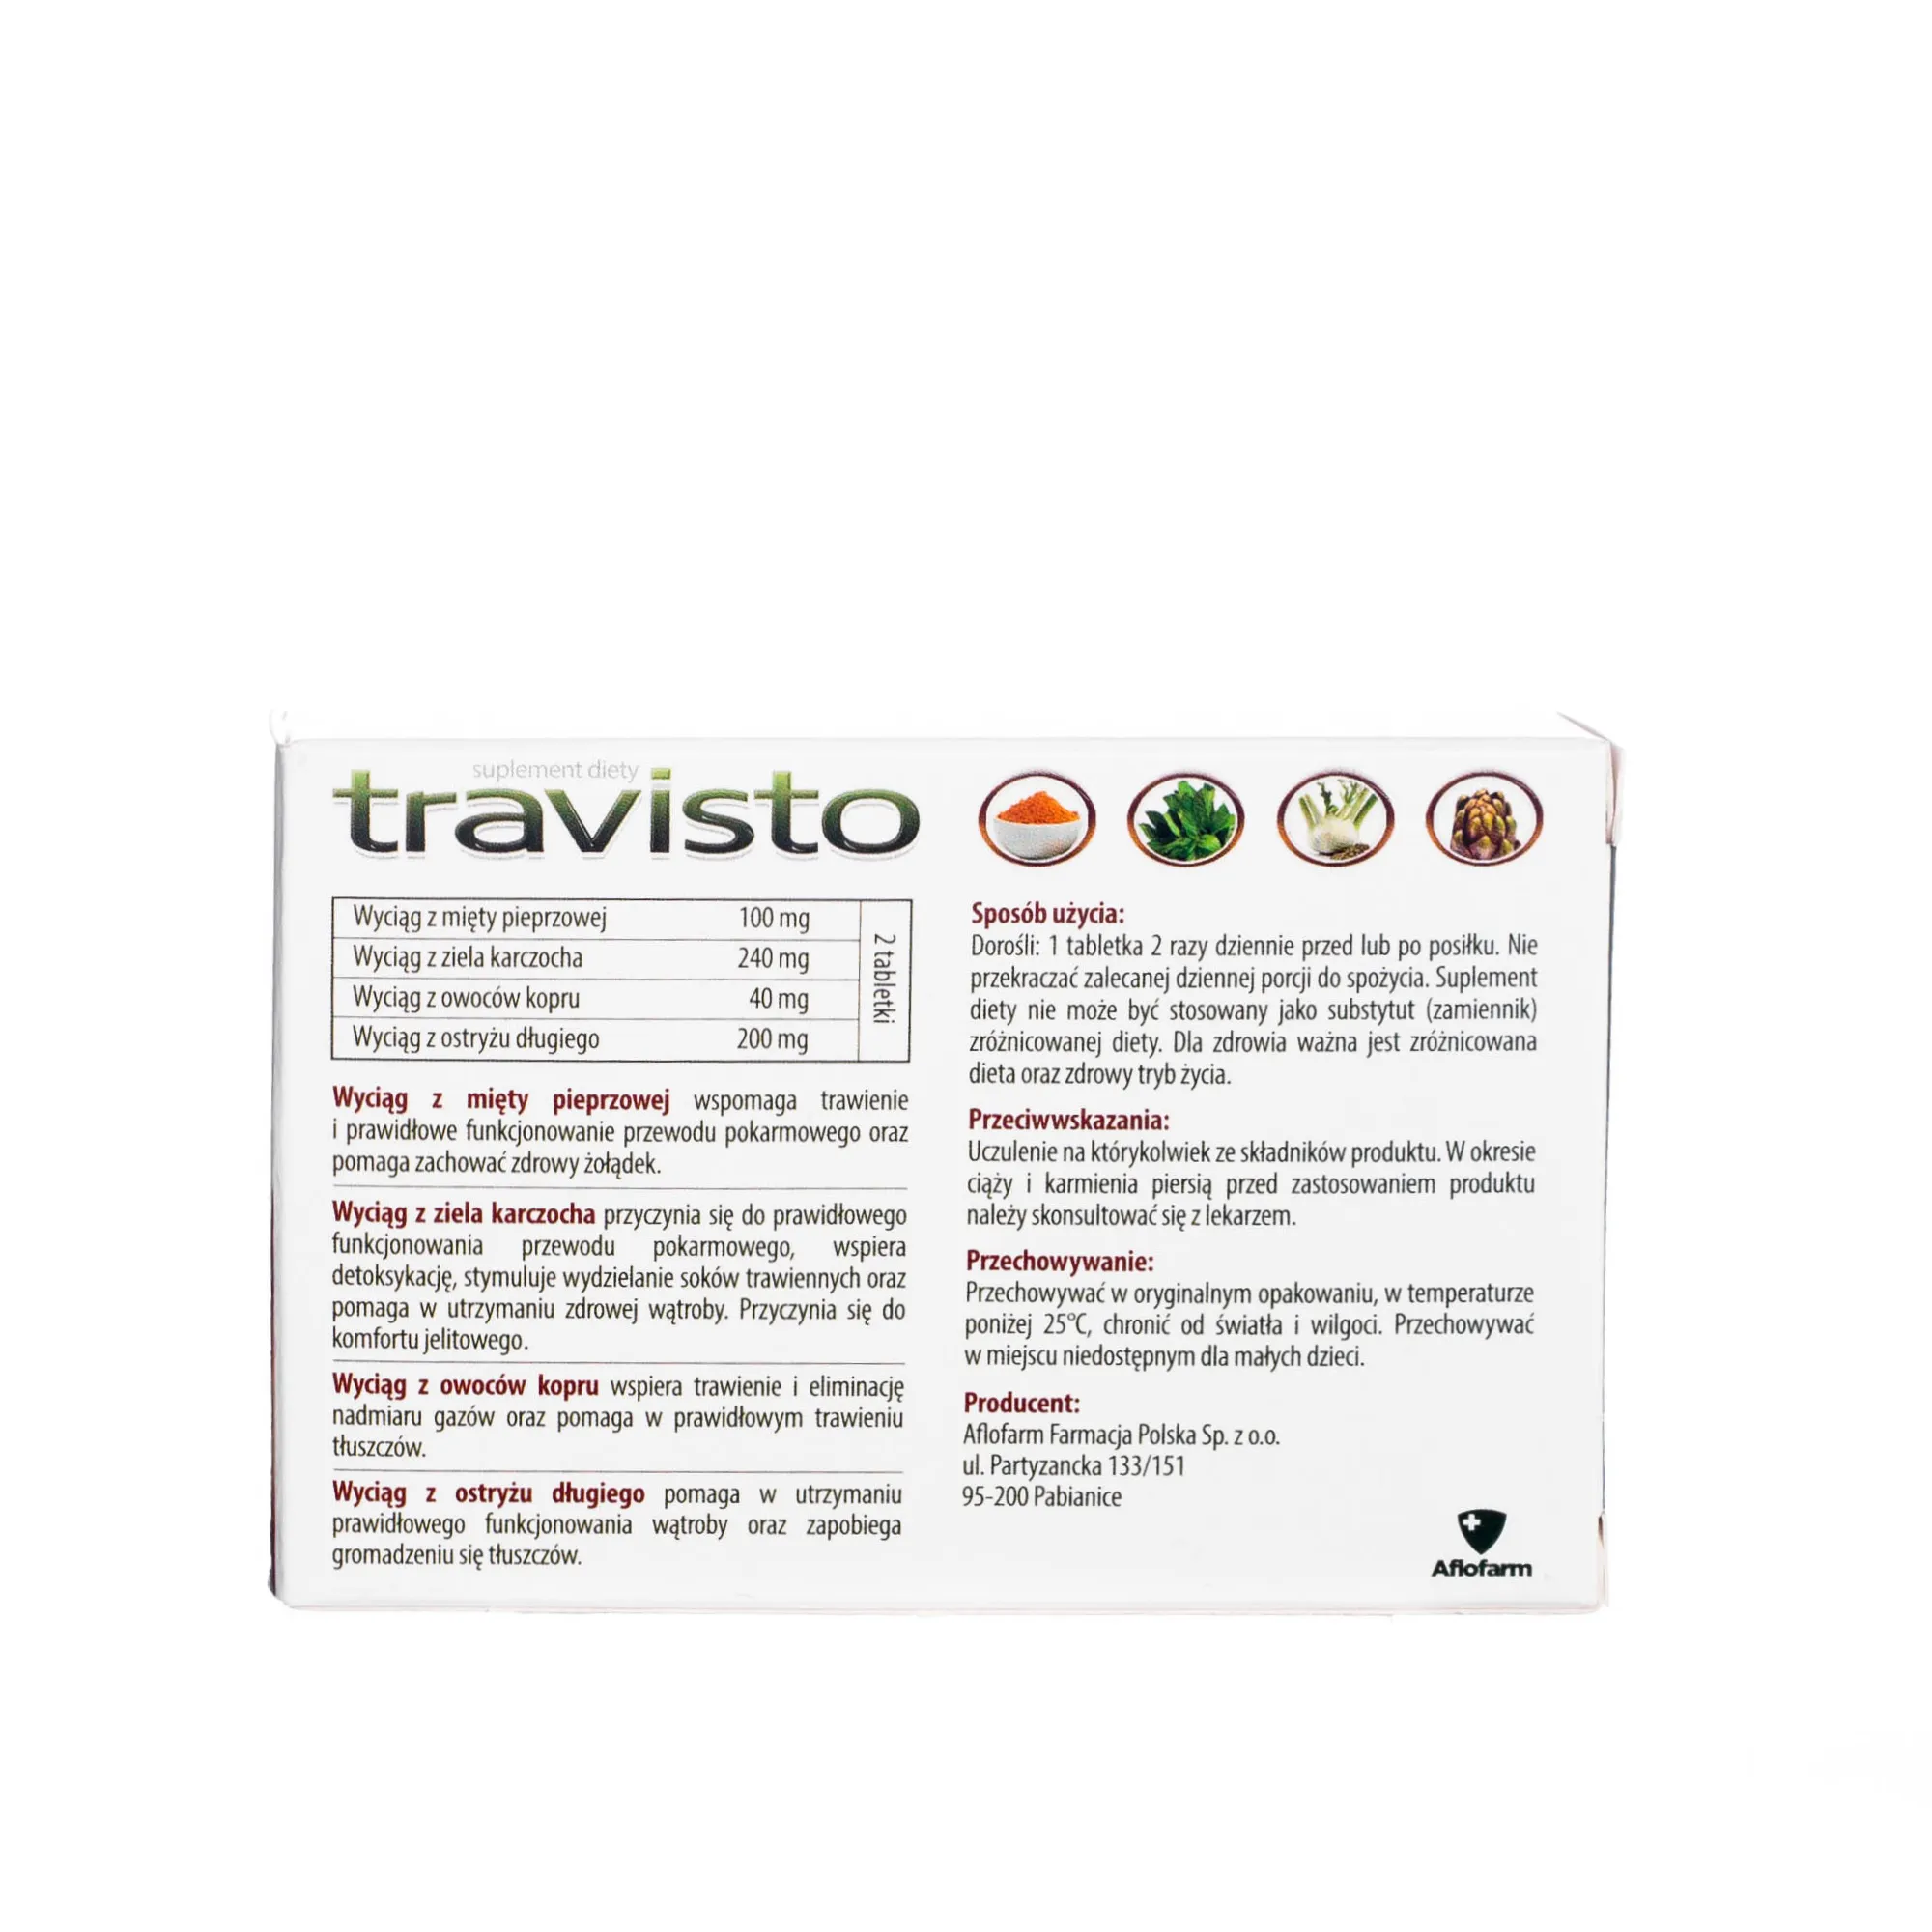 Travisto - suplement diet wspierający trawienie tłuszczów i zdrowy układ pokarmowy, 30 tabletek 